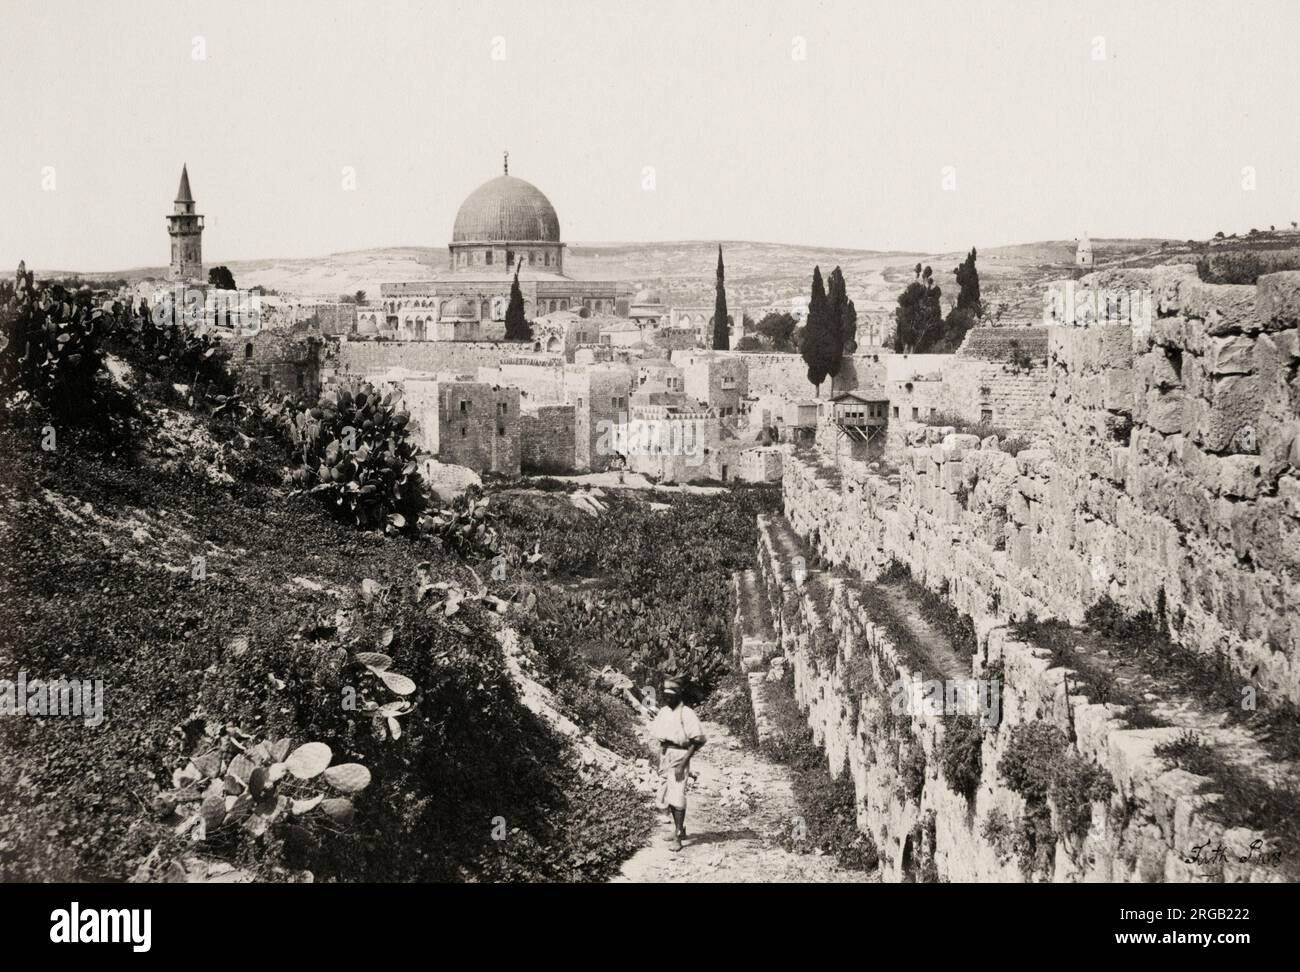 Fotografia d'epoca del XIX secolo: Mura della città e moschea di Omar, Gerusalemme, Terra Santa, Palestina (Israele). Immagine di Francis Frith, 1857. Foto Stock